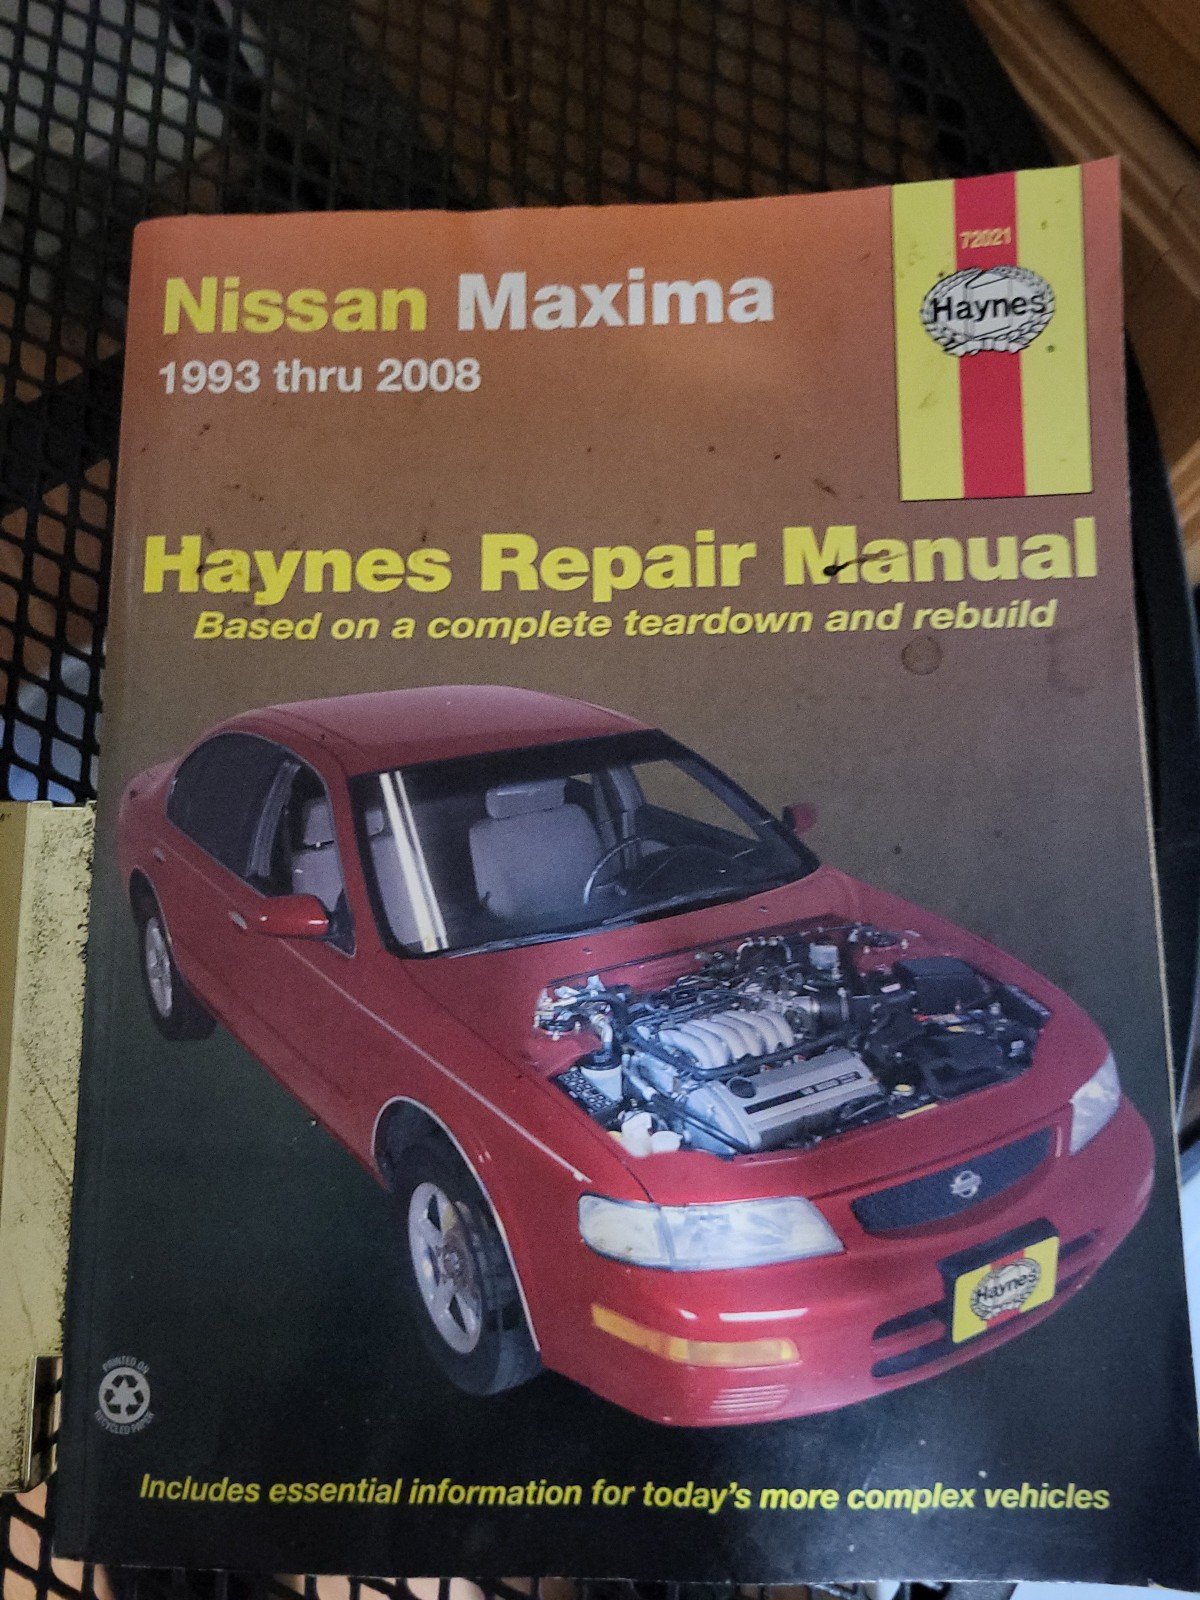 Haynes Repair Manual kfsM639YP